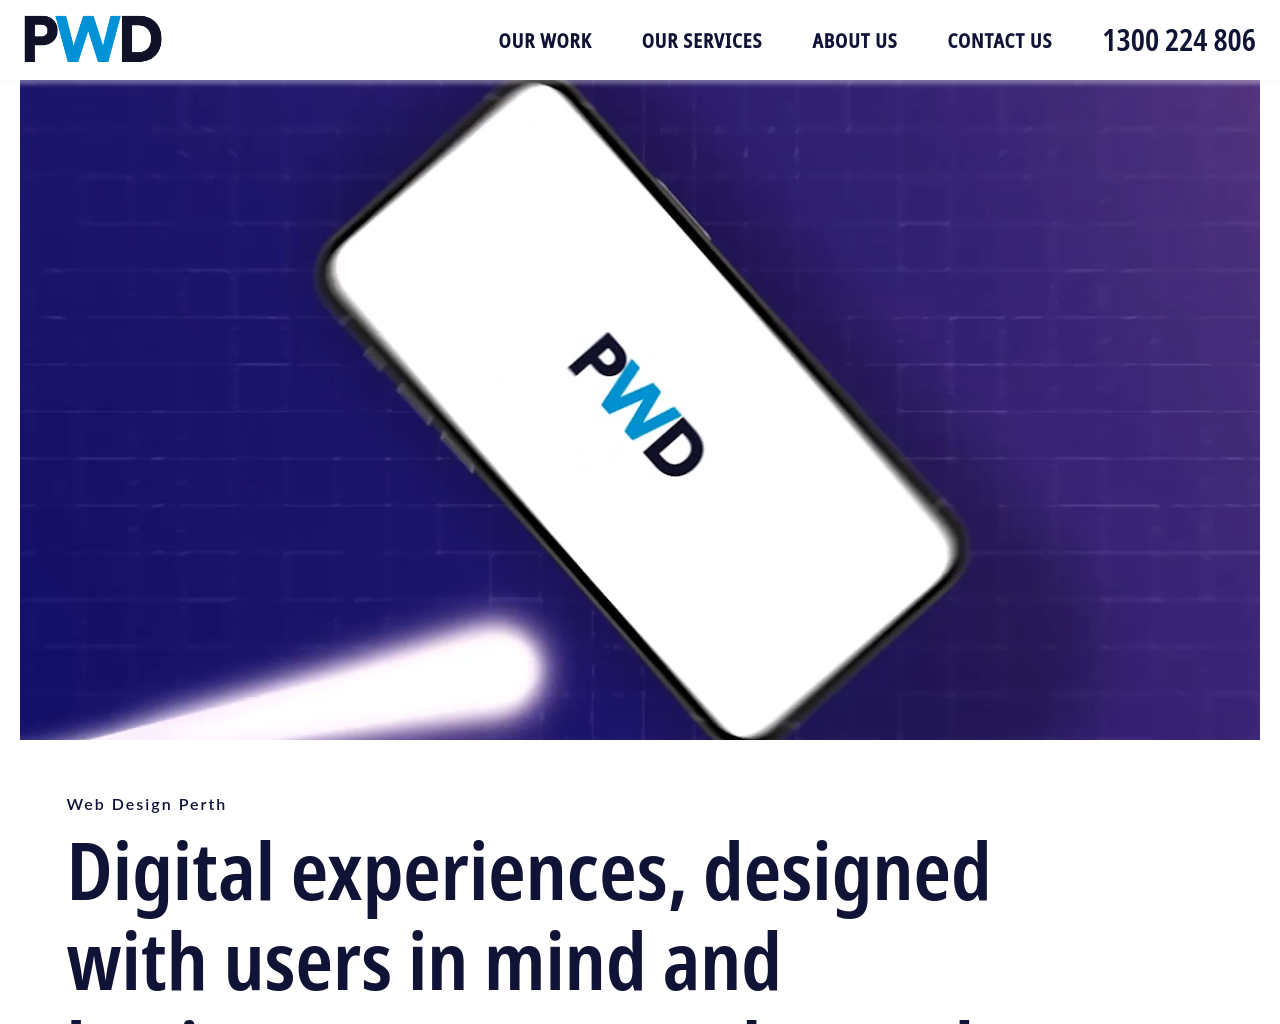 perth-web-design.com.au